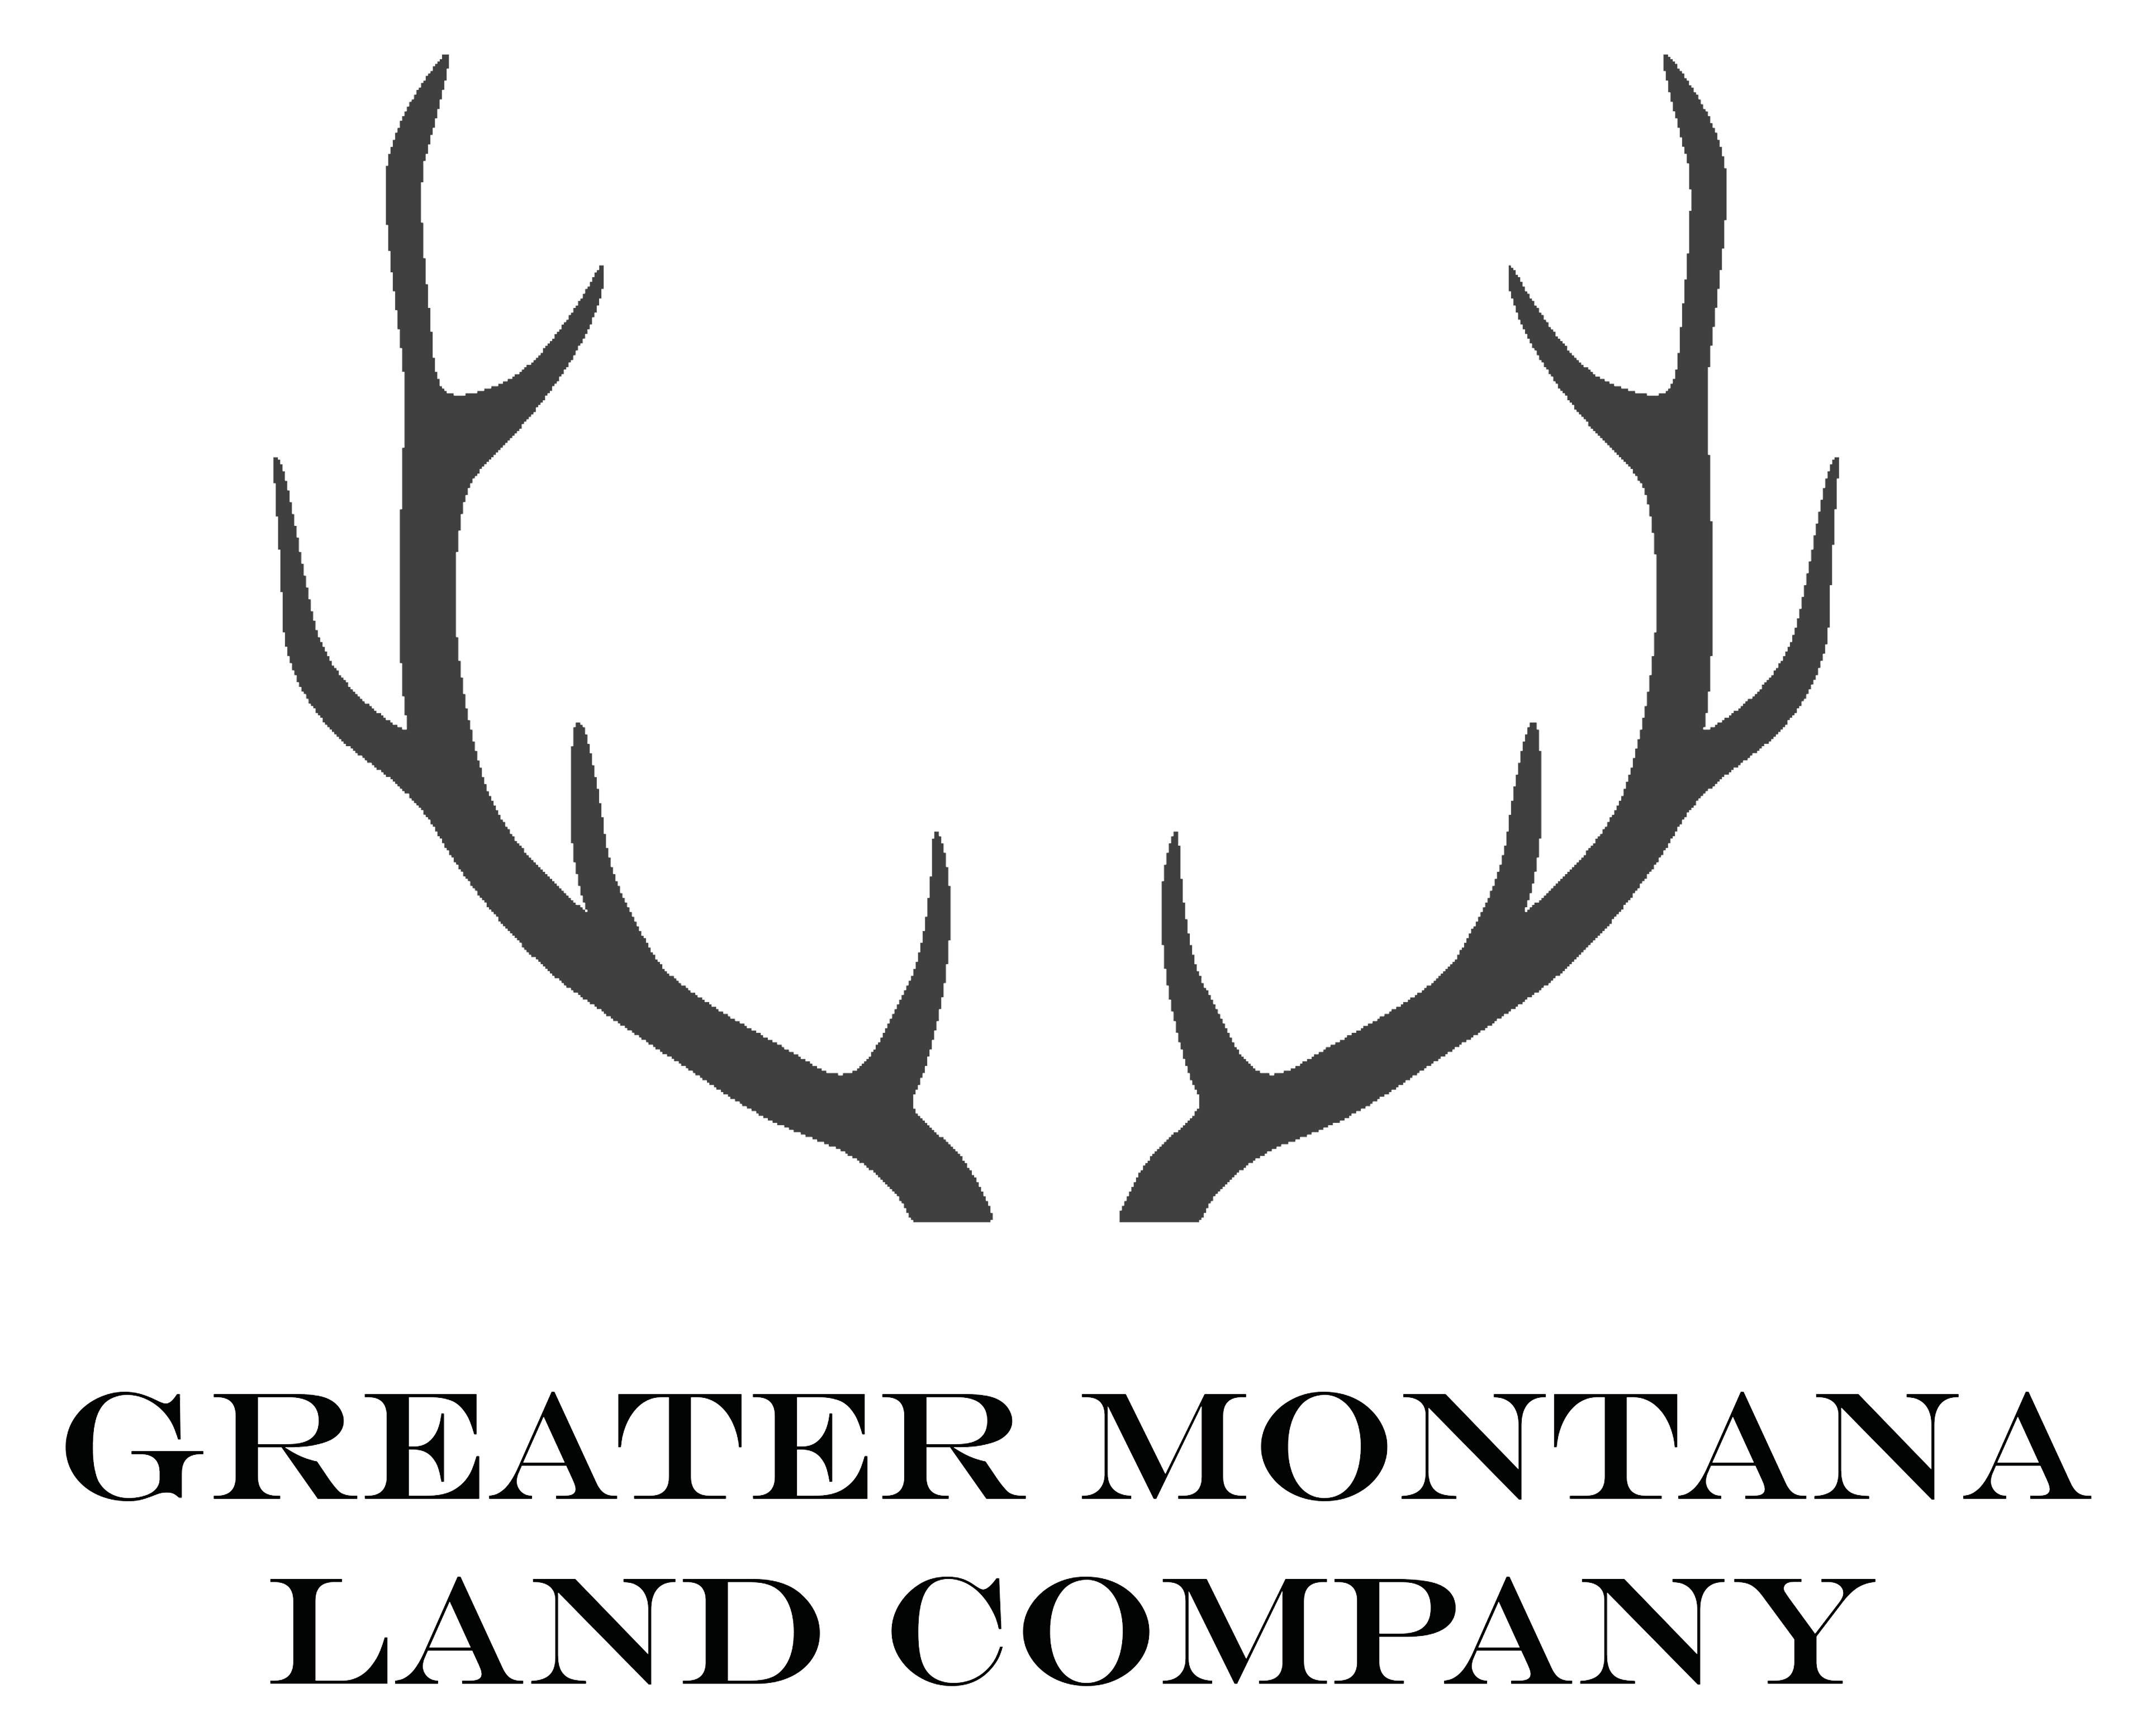 Greater Montana Land Company